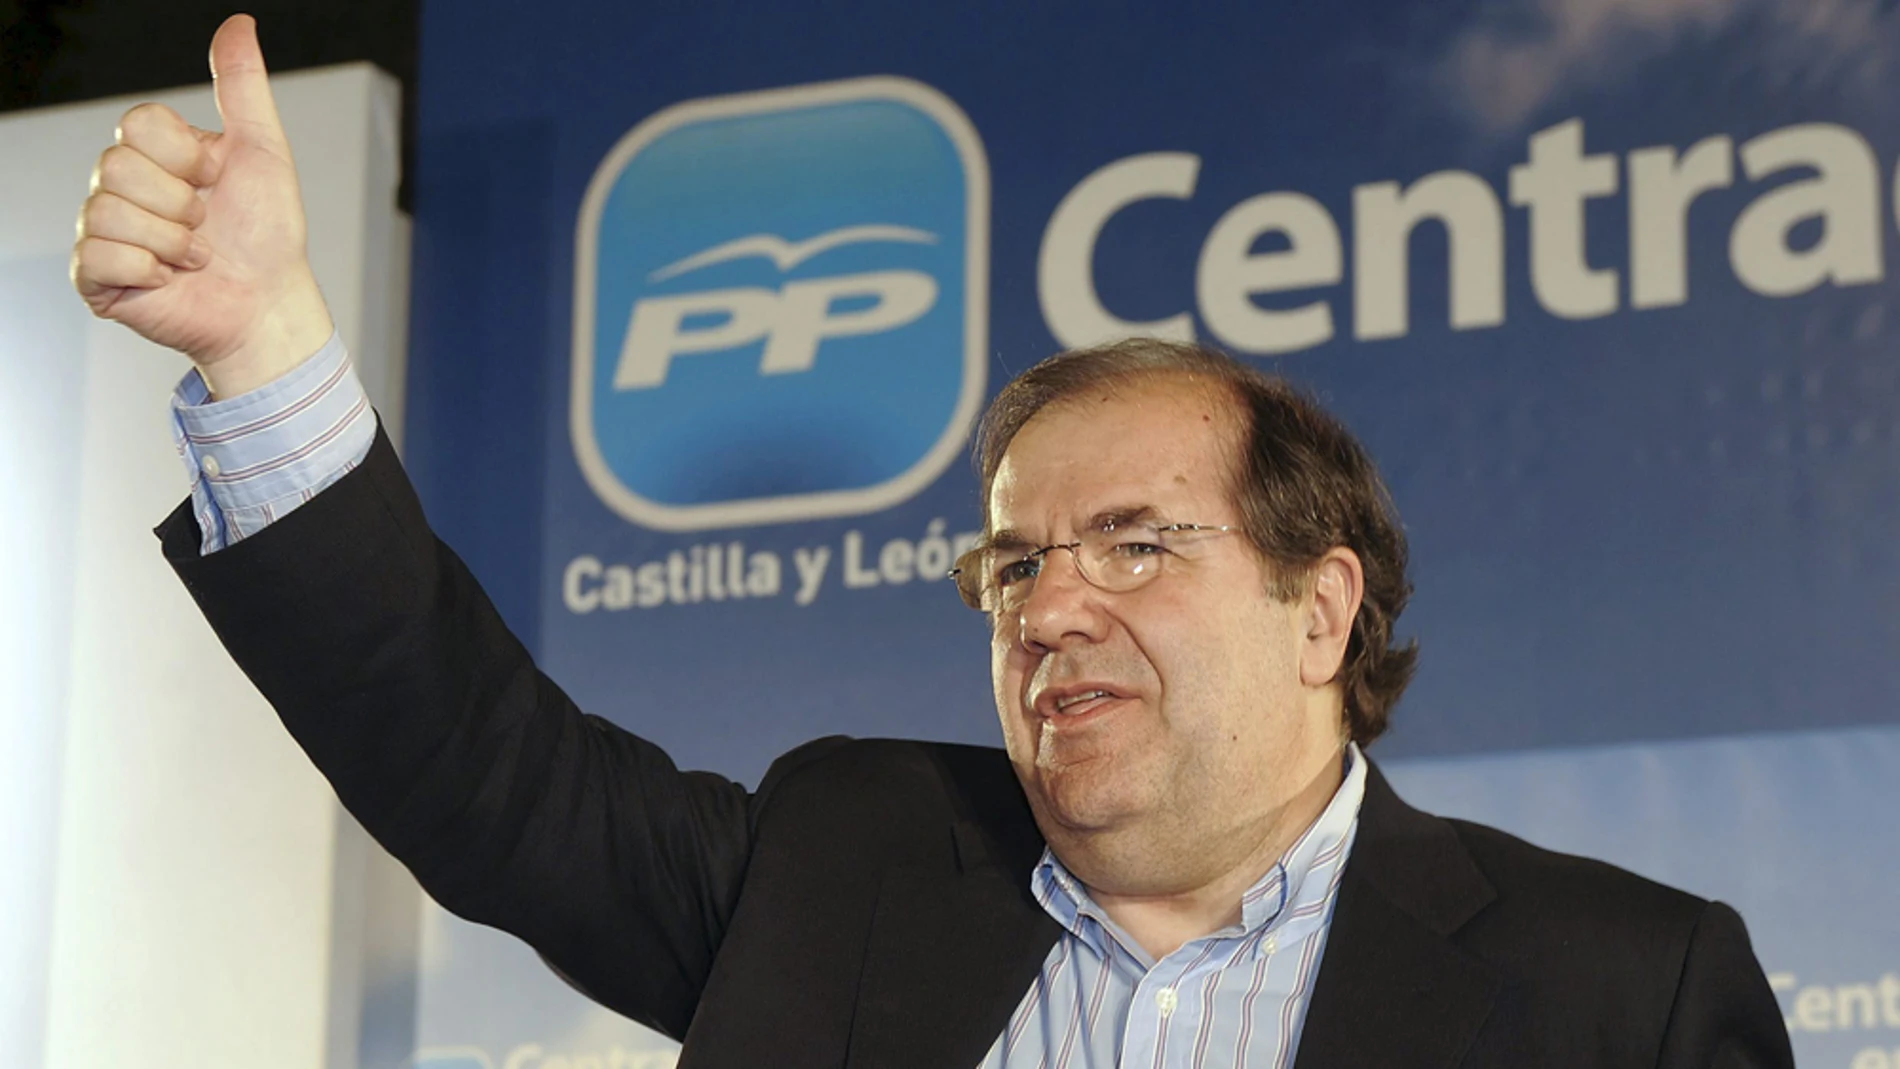 El candidato del PP a la Presidencia de la Junta de Castilla y León, Juan Vicente Herrera